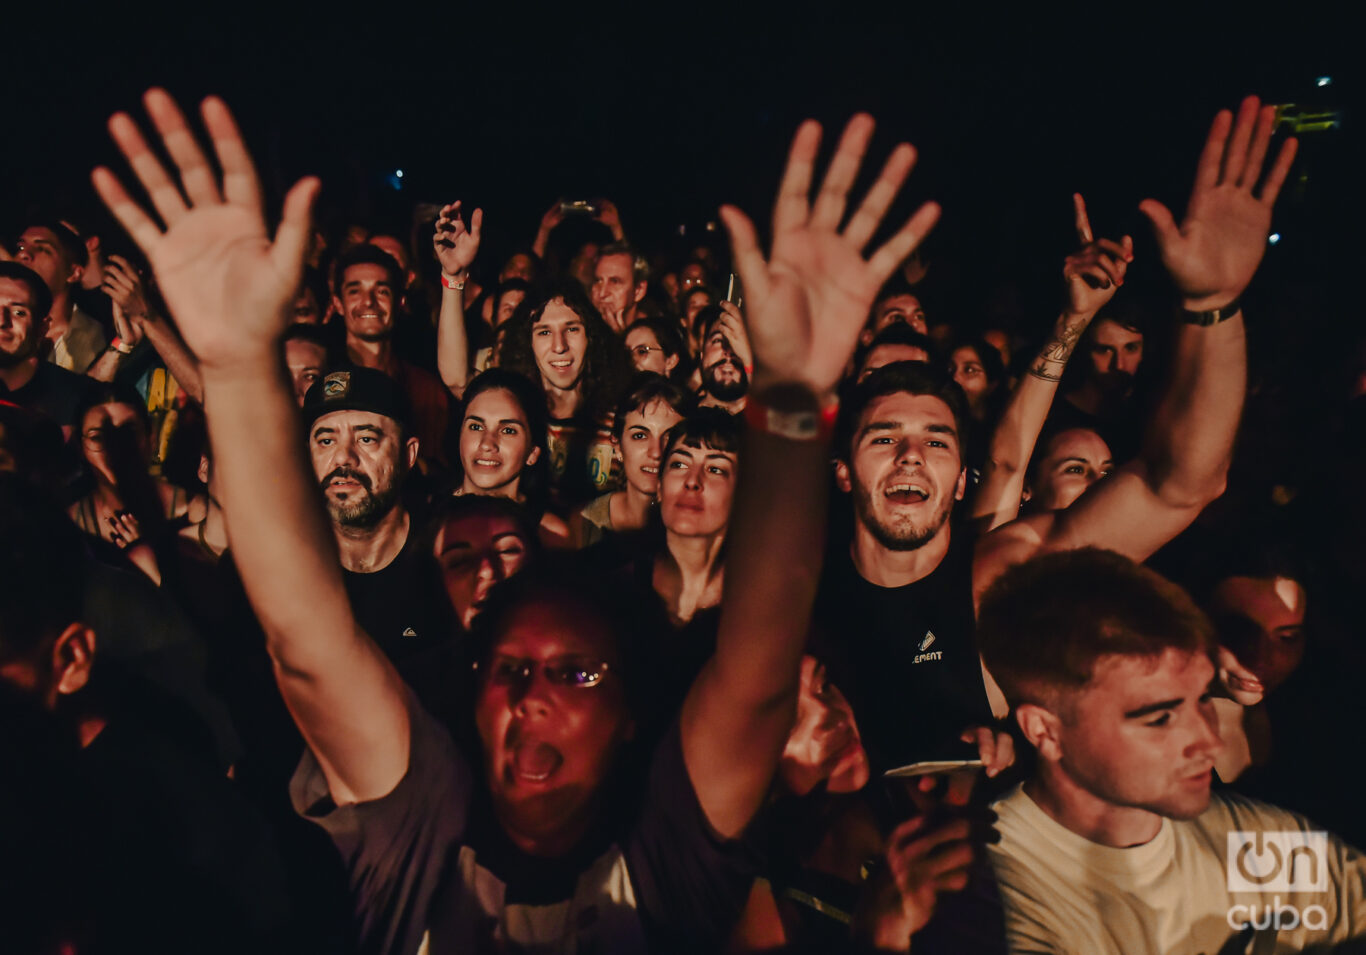 Cerca de 5 mil personas colmaron cada noche el concierto de Manu Chao en Buenos Aires. Foto: Kaloian.